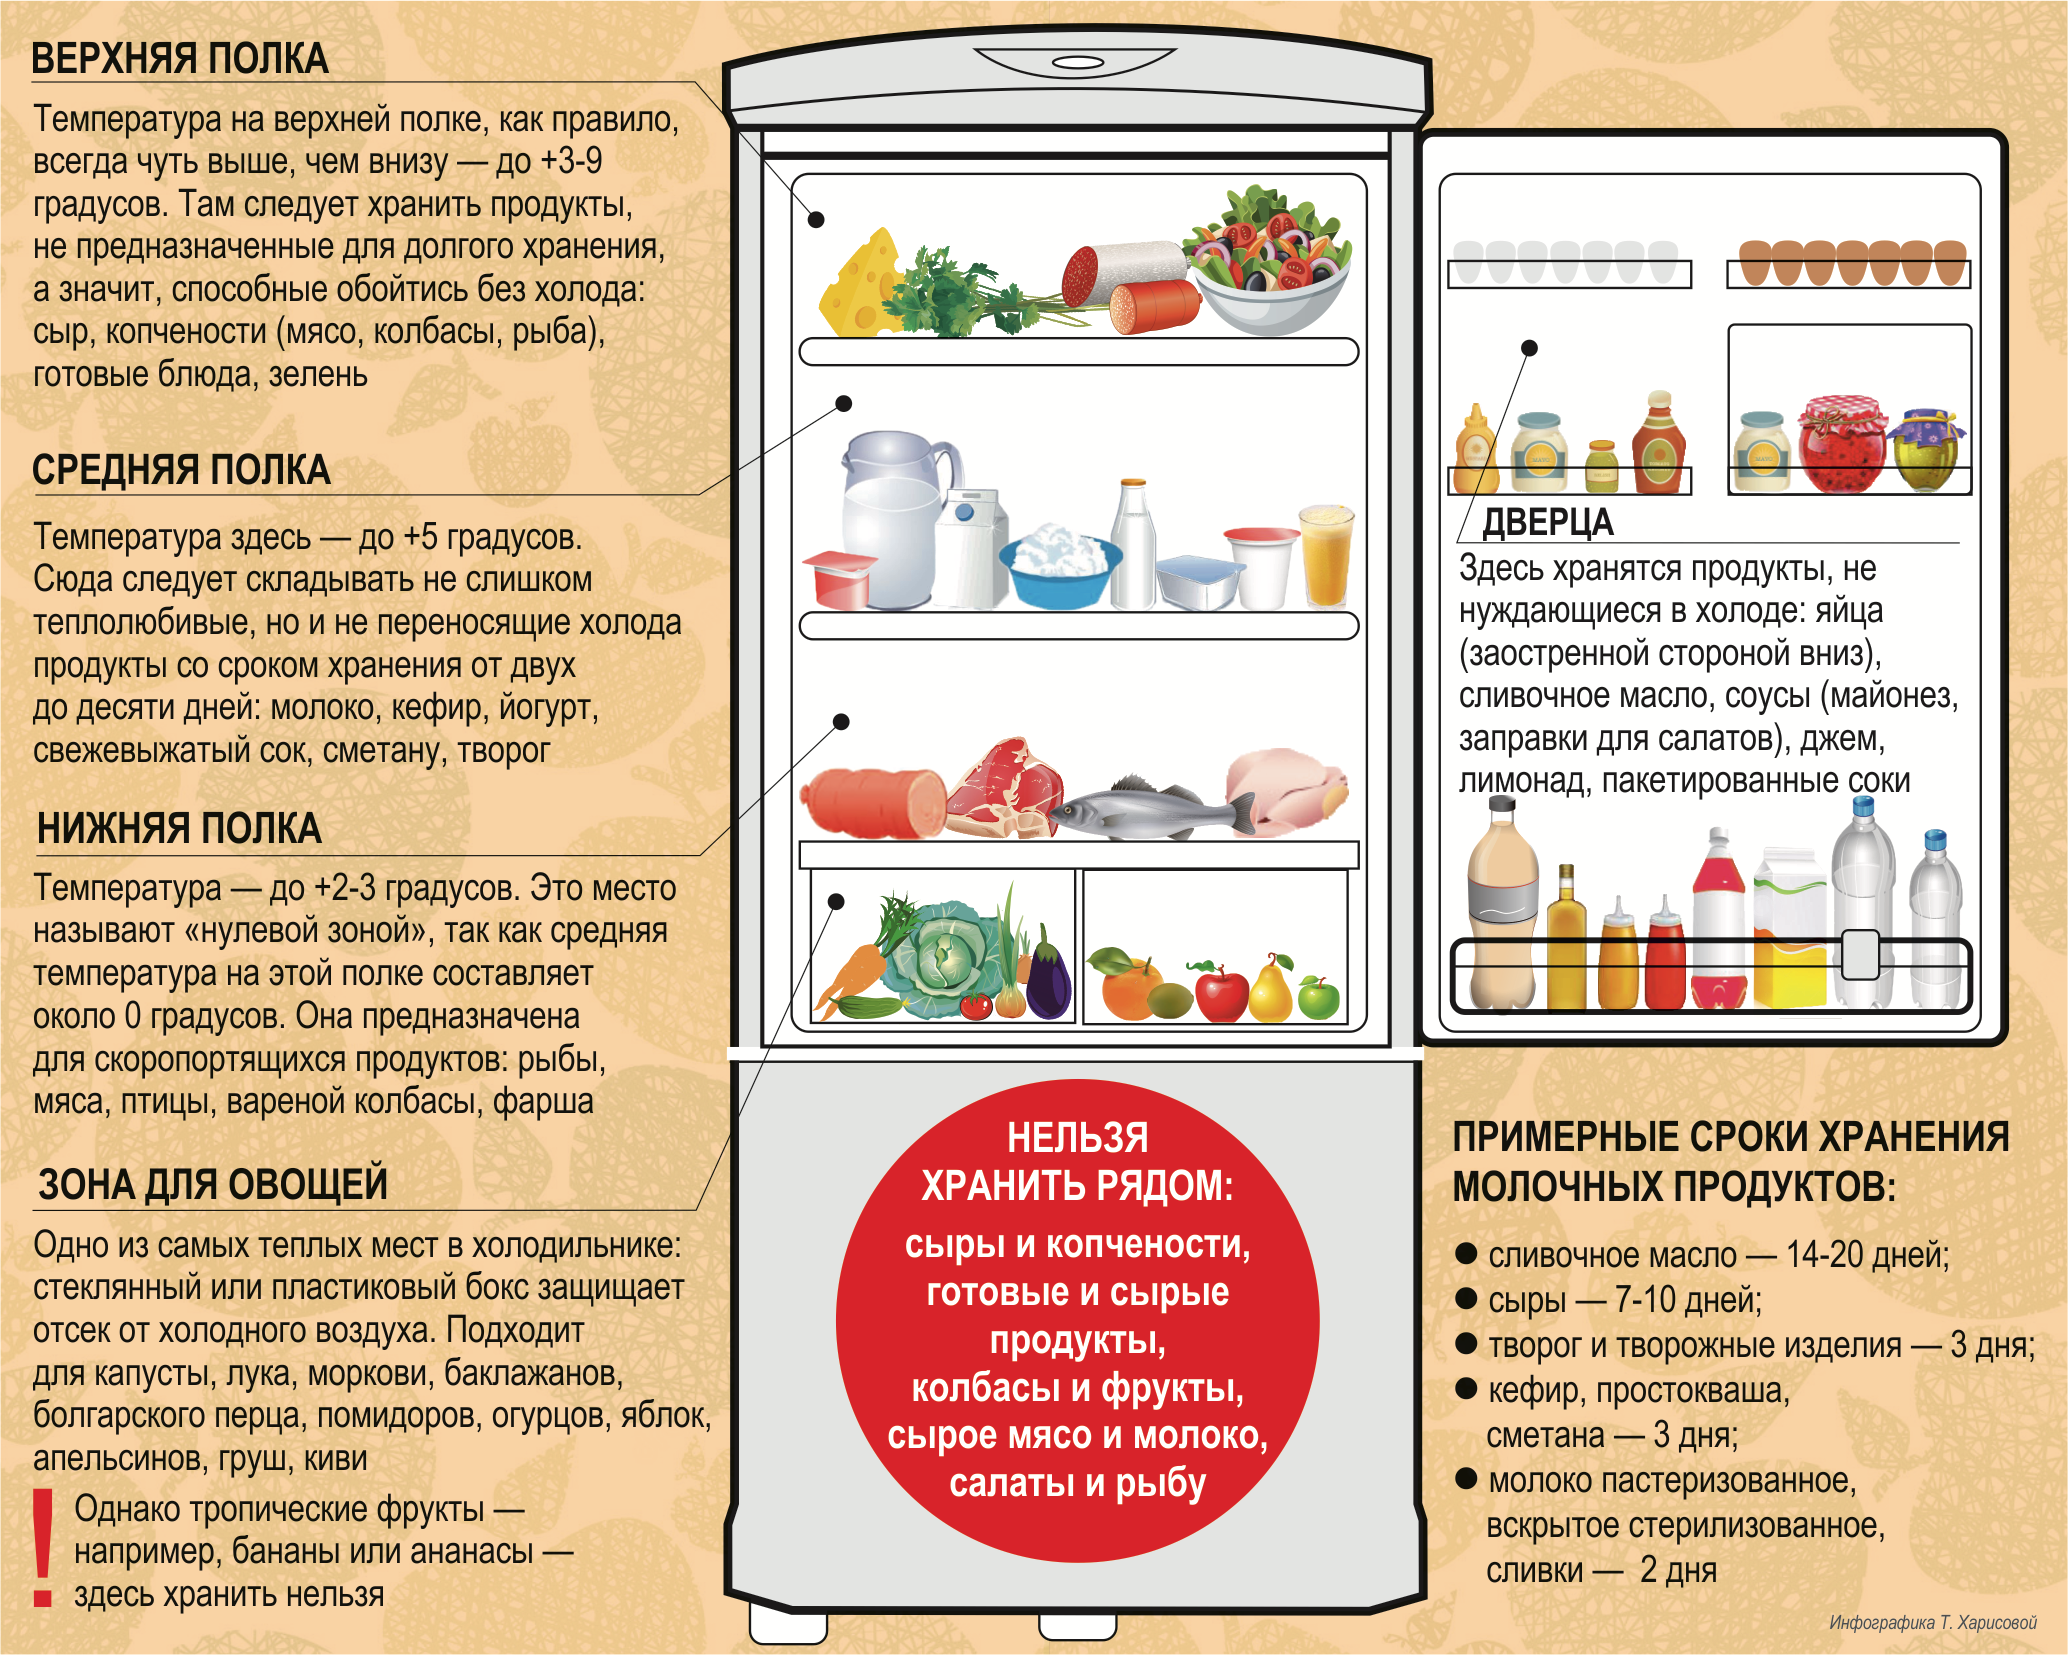 Сколько можно хранить в холодильнике свежее мясо: какие особенности и условия